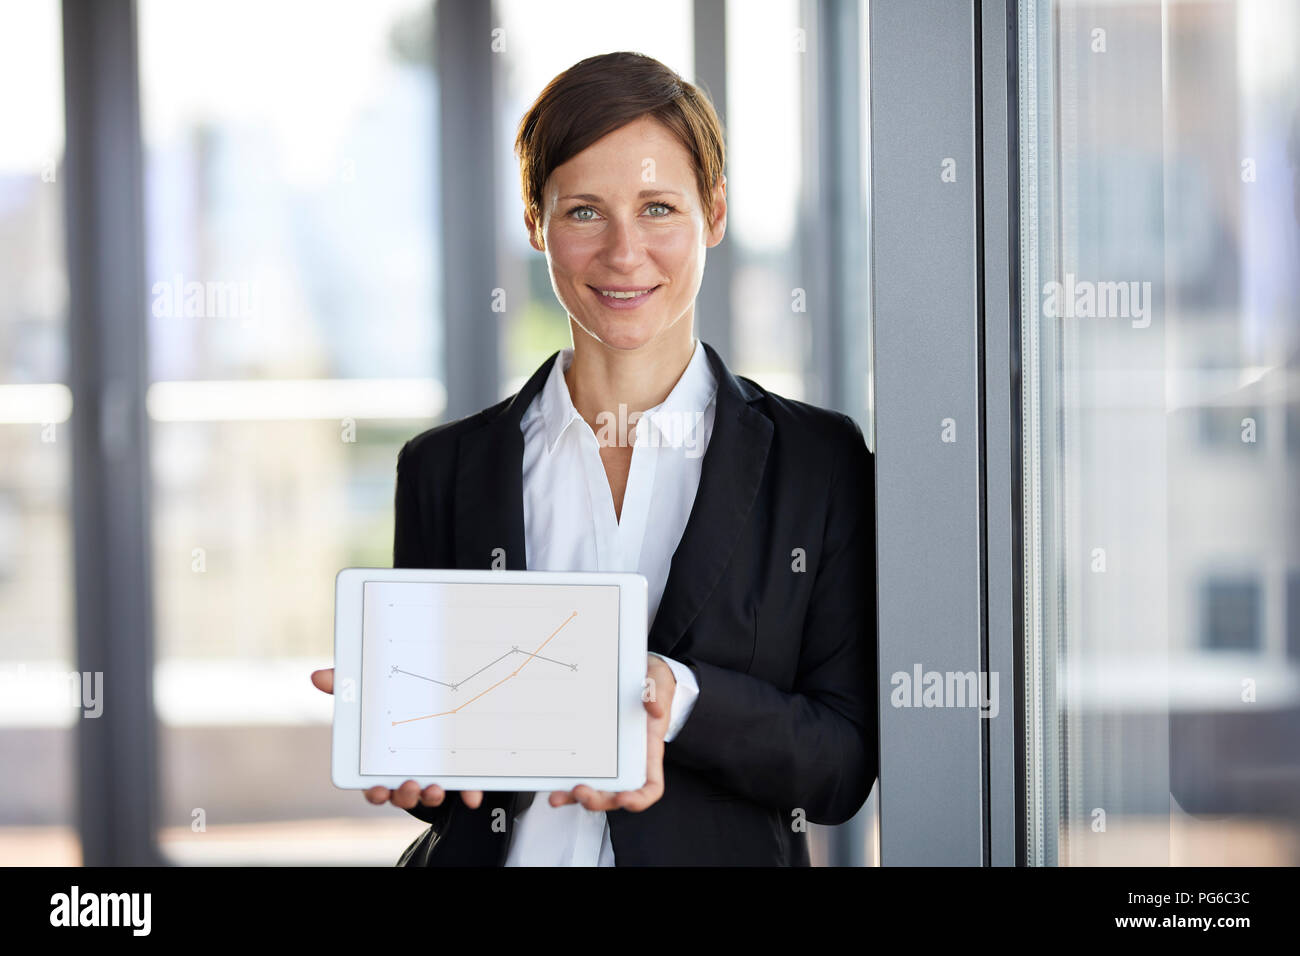 Portrait von lächelnden Geschäftsfrau im Amt, Tablet, aufsteigender Linie graph Stockfoto